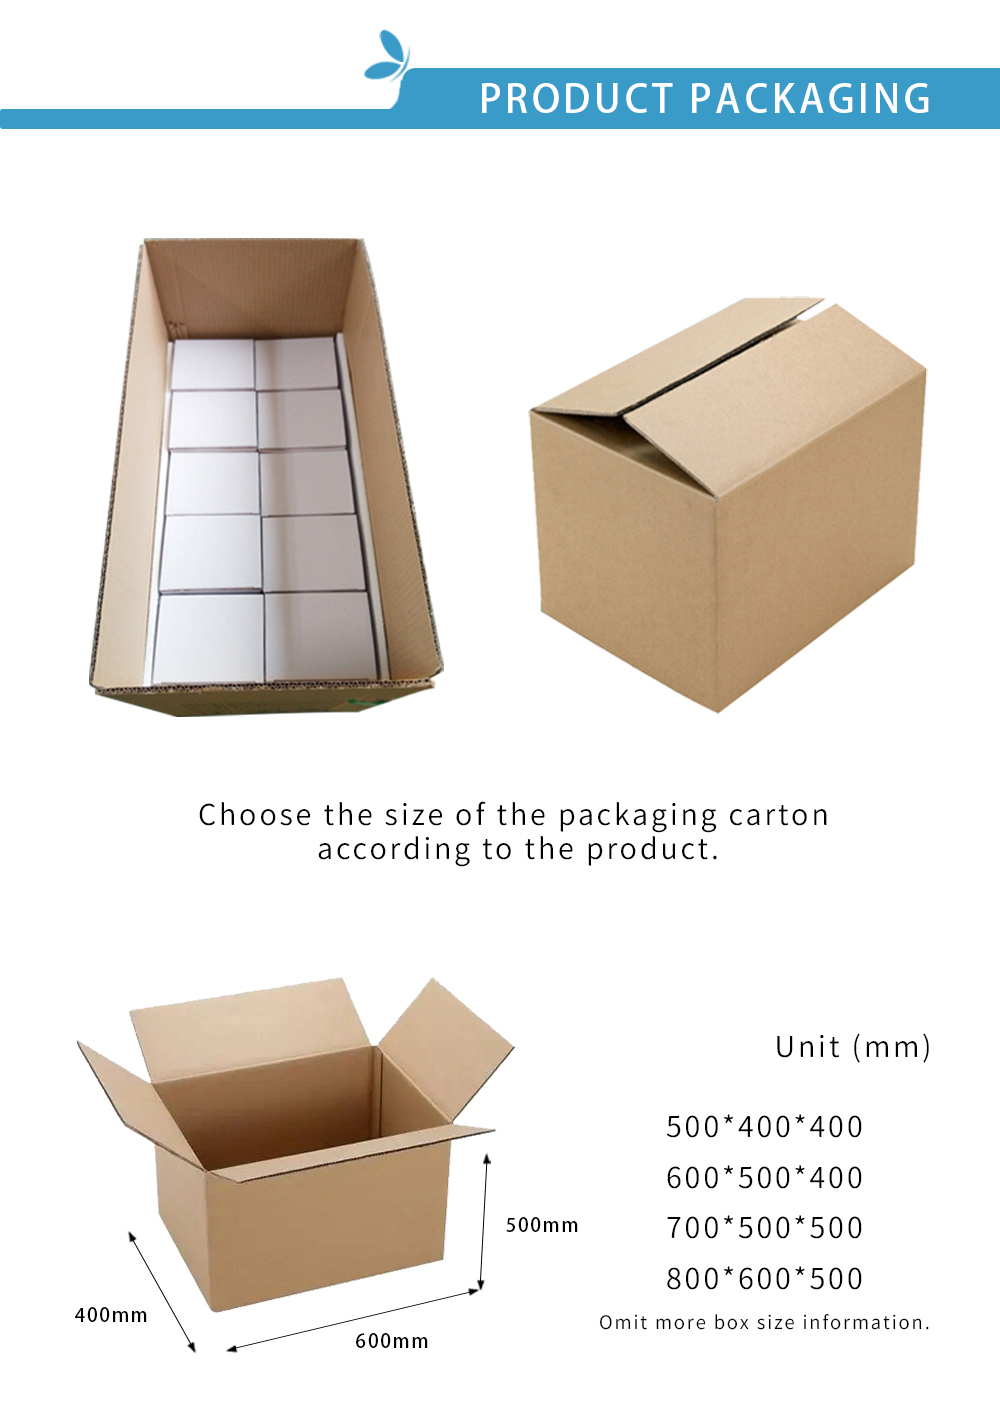 3. Lip mud packing box